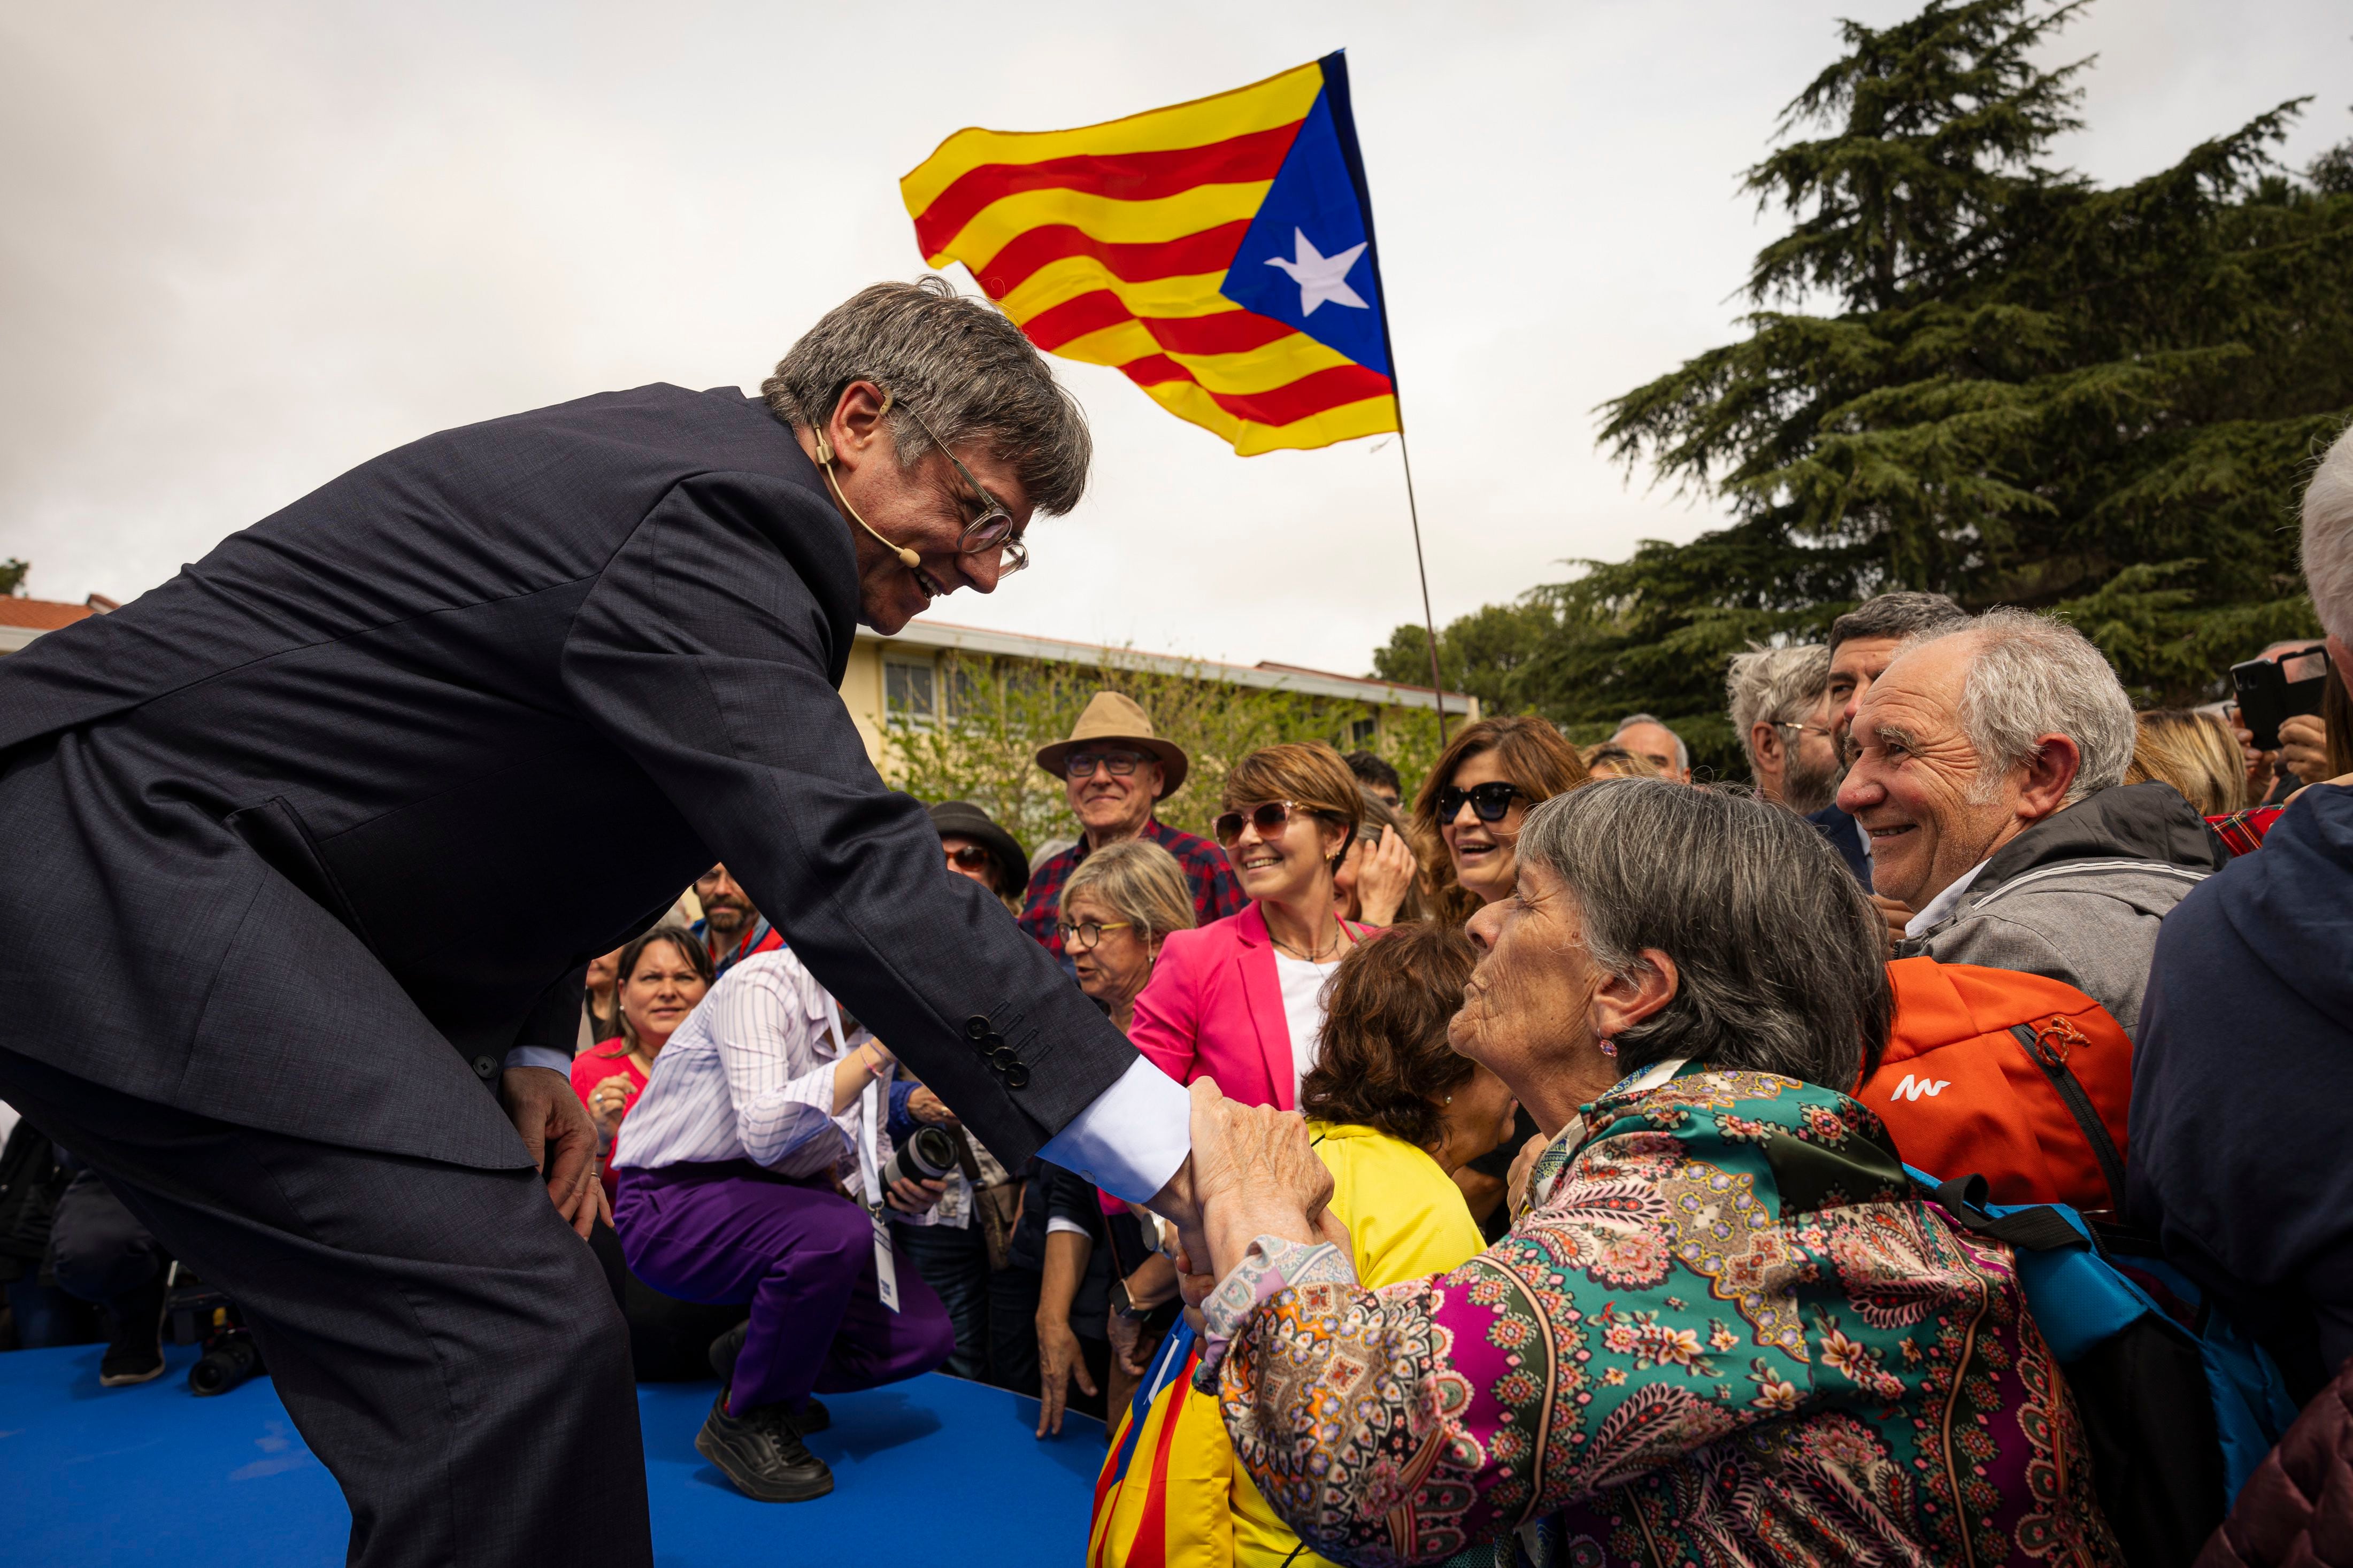 Junts traslada su campaña al cuartel electoral de Puigdemont en el sur de Francia